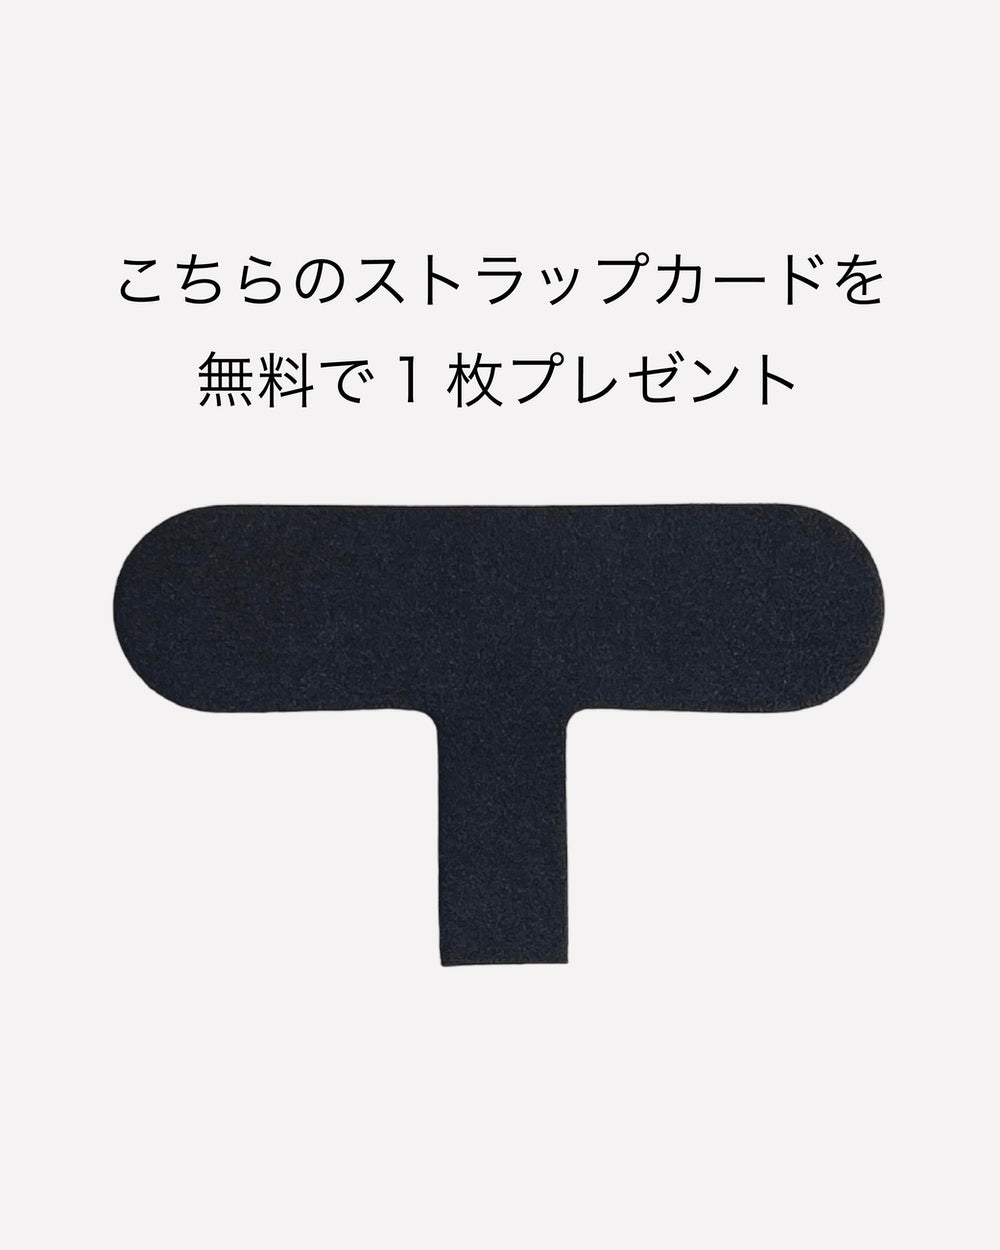 【セット商品】バンパーハードケース / R1001 / ブラック × ショルダーストラップ / ネイビー / R1781